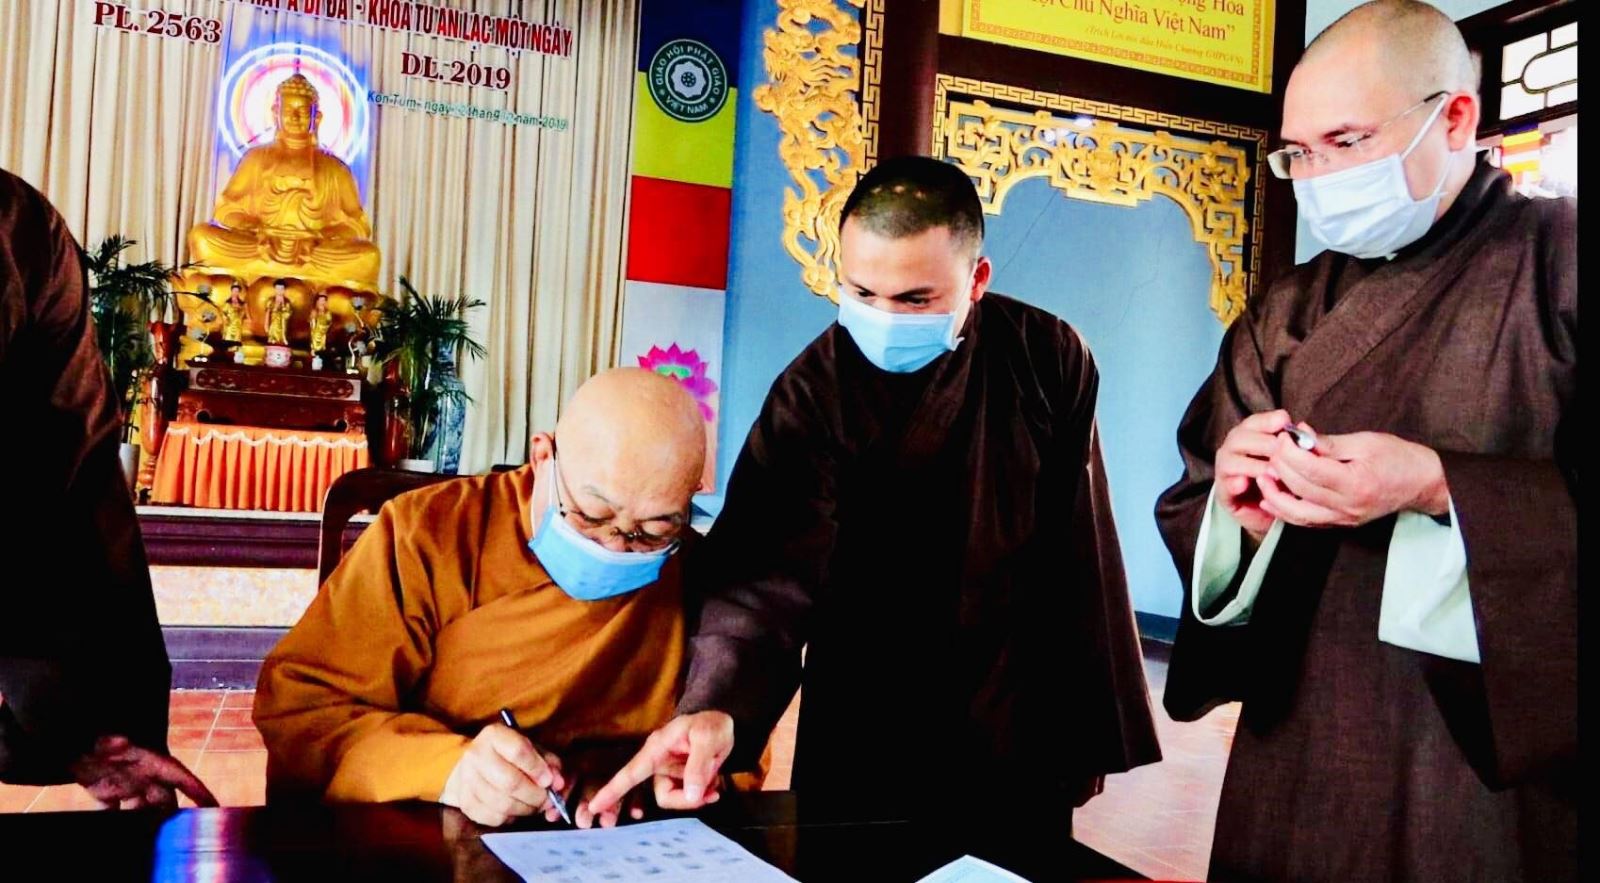 Công an tỉnh lập tổ công tác cấp thẻ căn cước công dân  cho chức sắc hàng giáo phẩm và Tăng, ni hàng tăng chúng của đạo Phật  trên địa bàn tỉnh